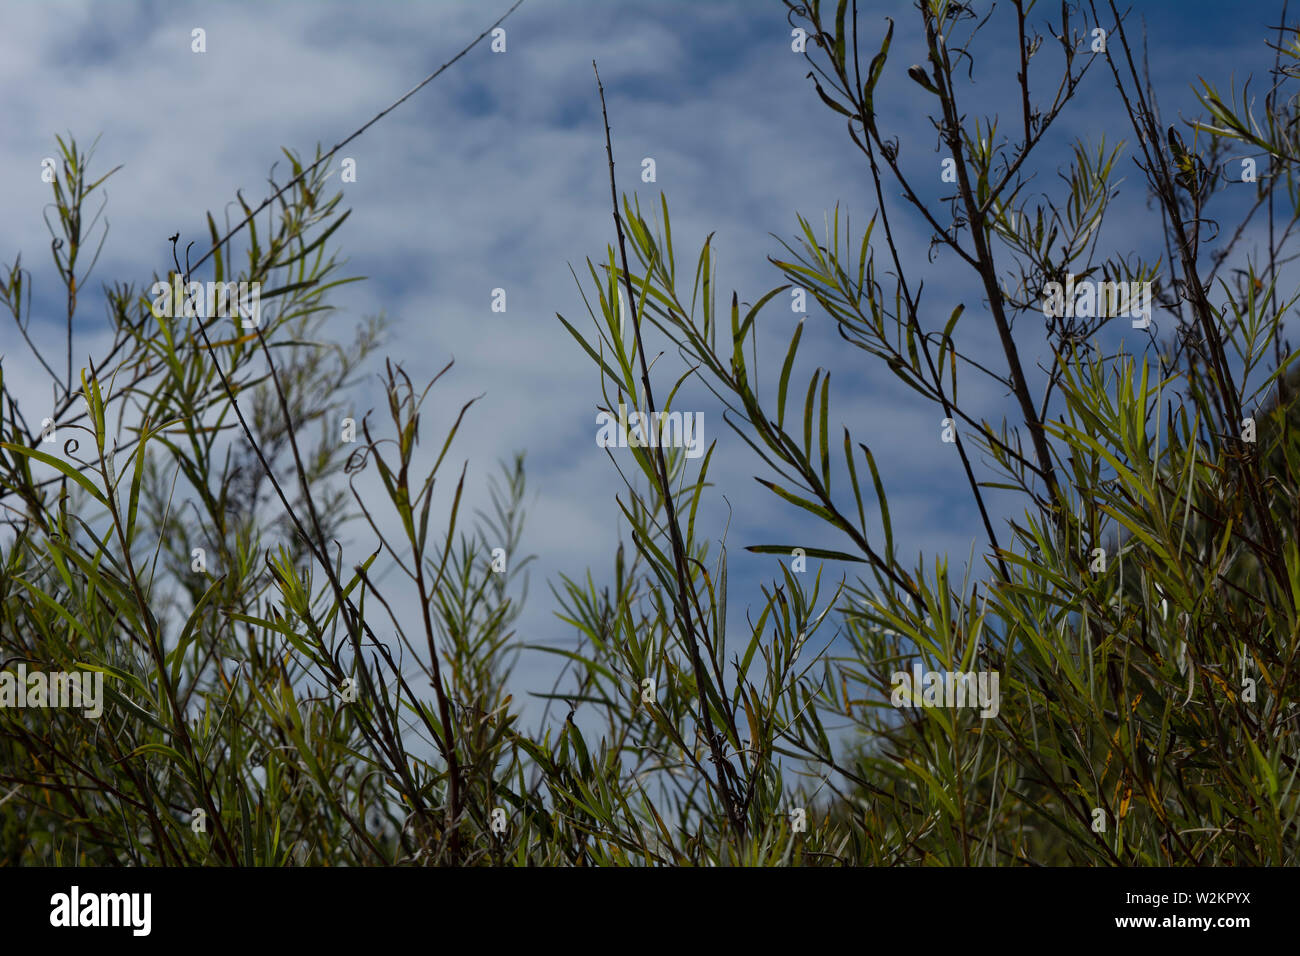 Hohes Gras an einem sonnigen Tag in Santa Cruz, Kalifornien. Realistische, authentische Foto der Anlage Muster. Stockfoto